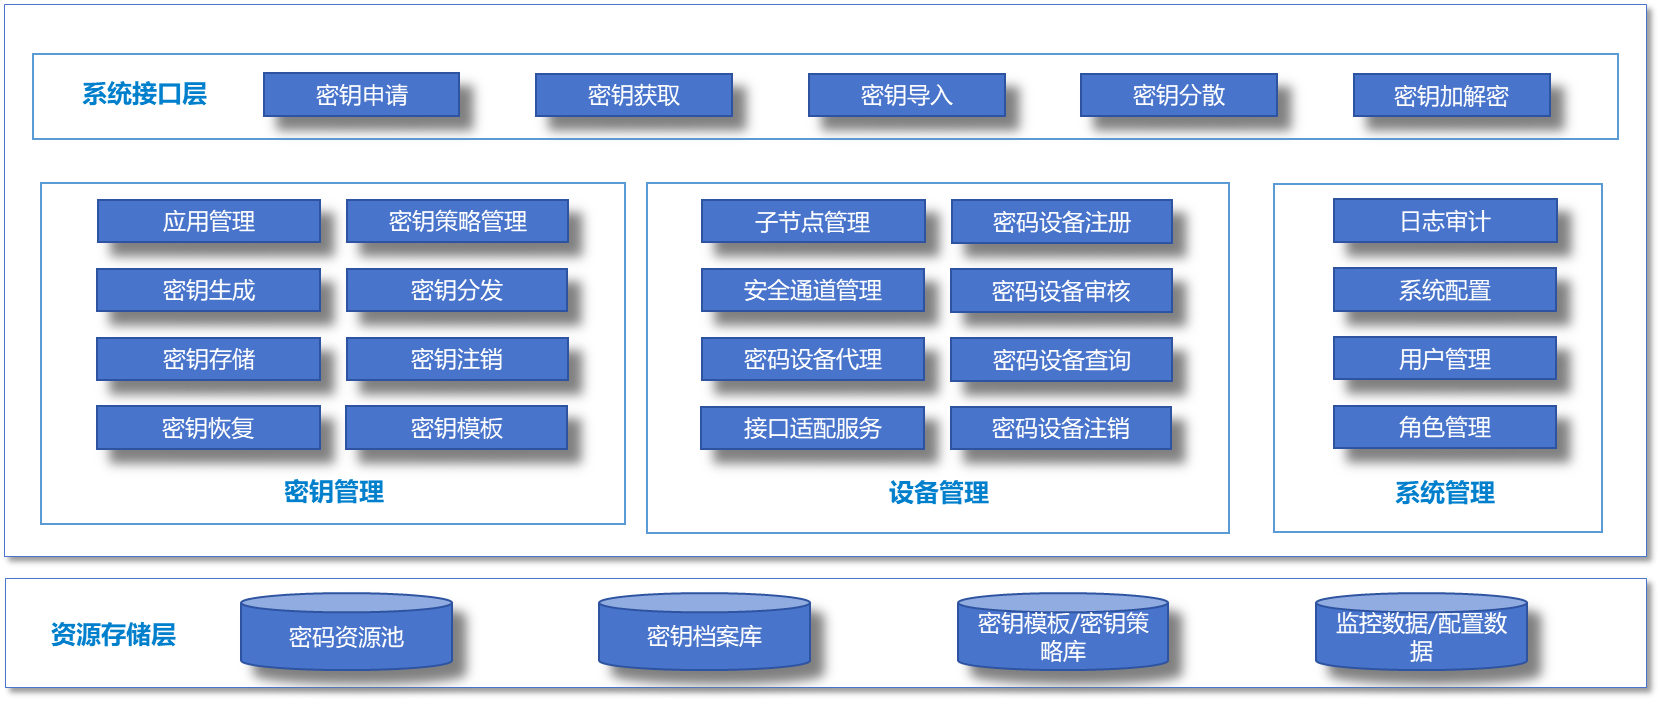 密钥管理系统功能架构图.png